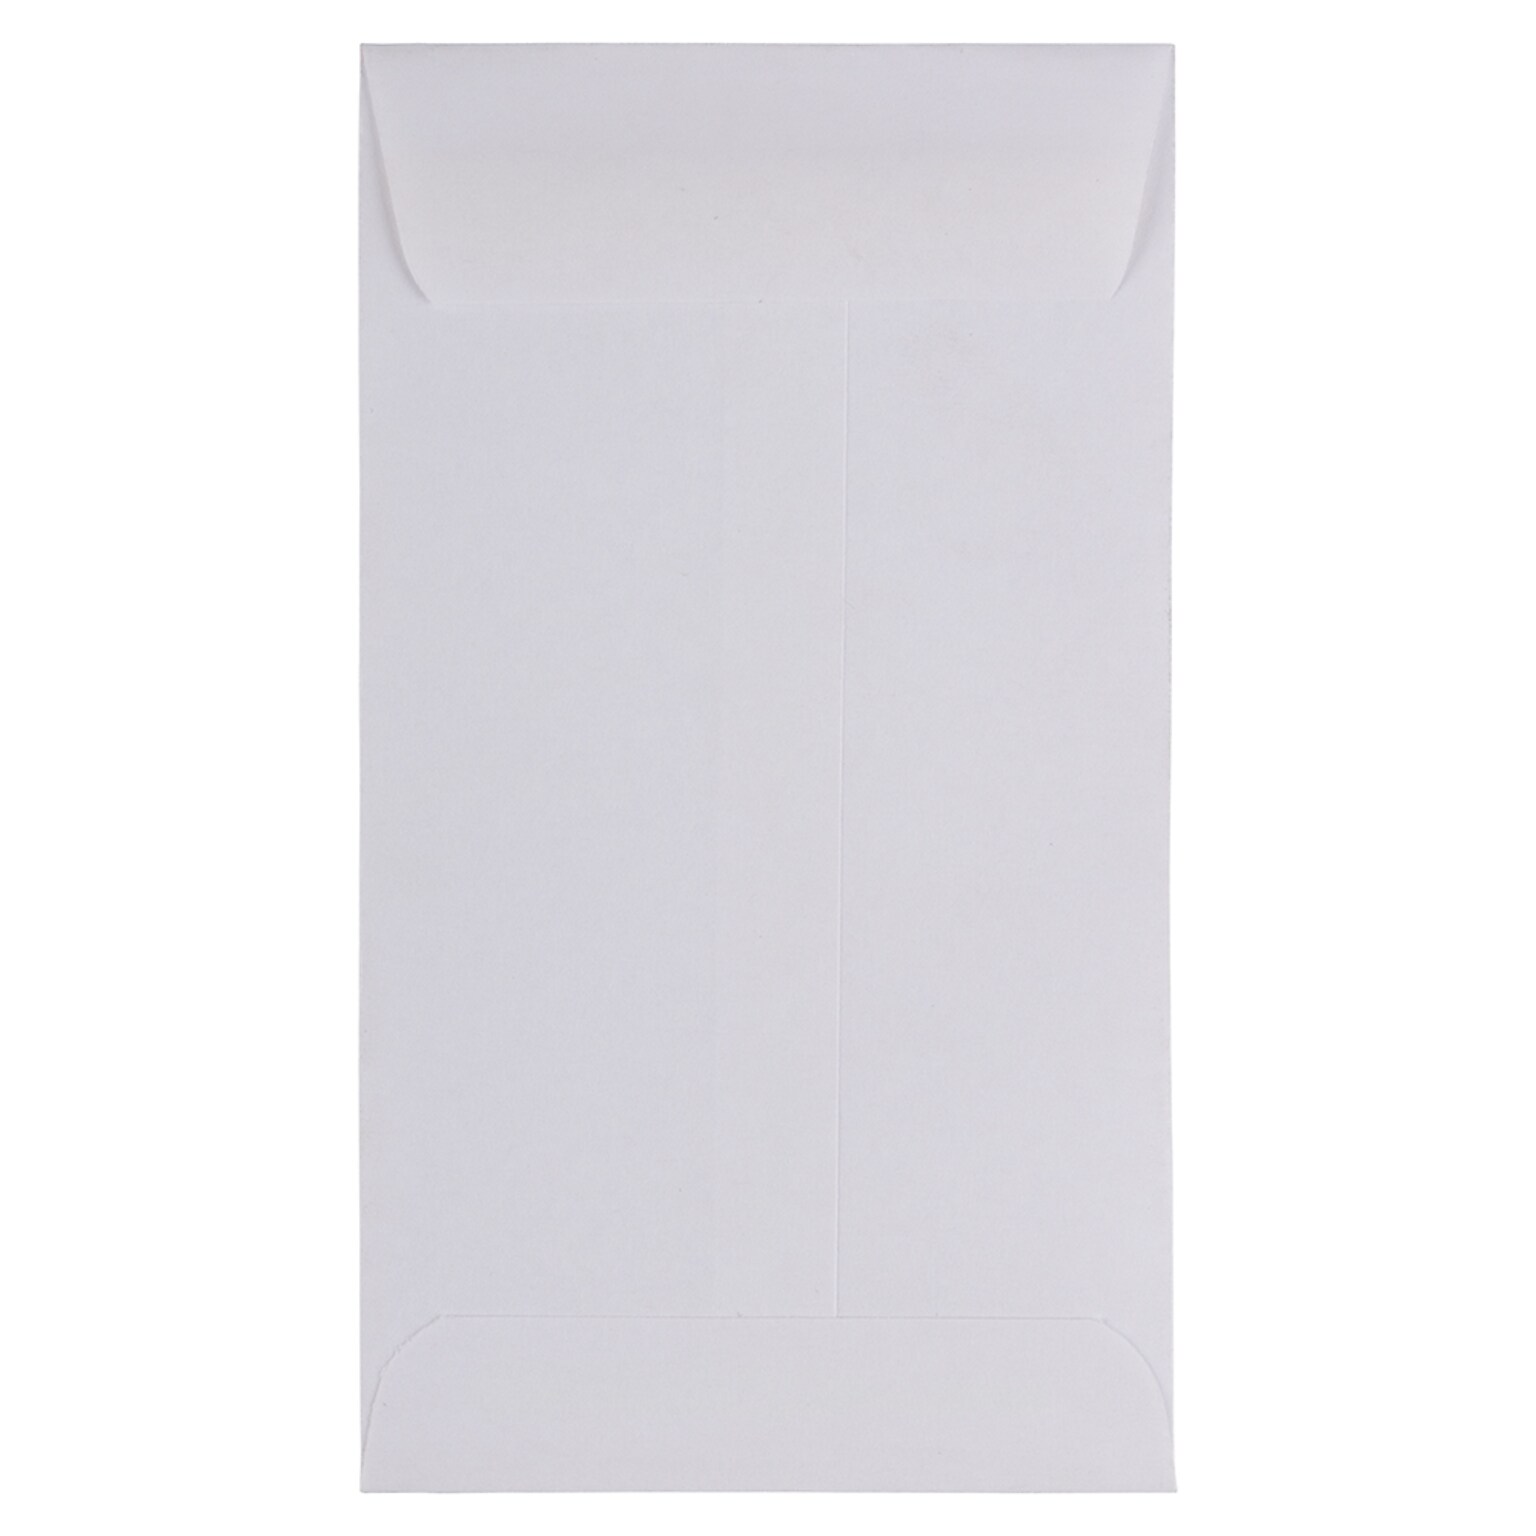 JAM Paper #6 Coin Business Envelopes, 3.375 x 6, White, 25/Pack (1623184)